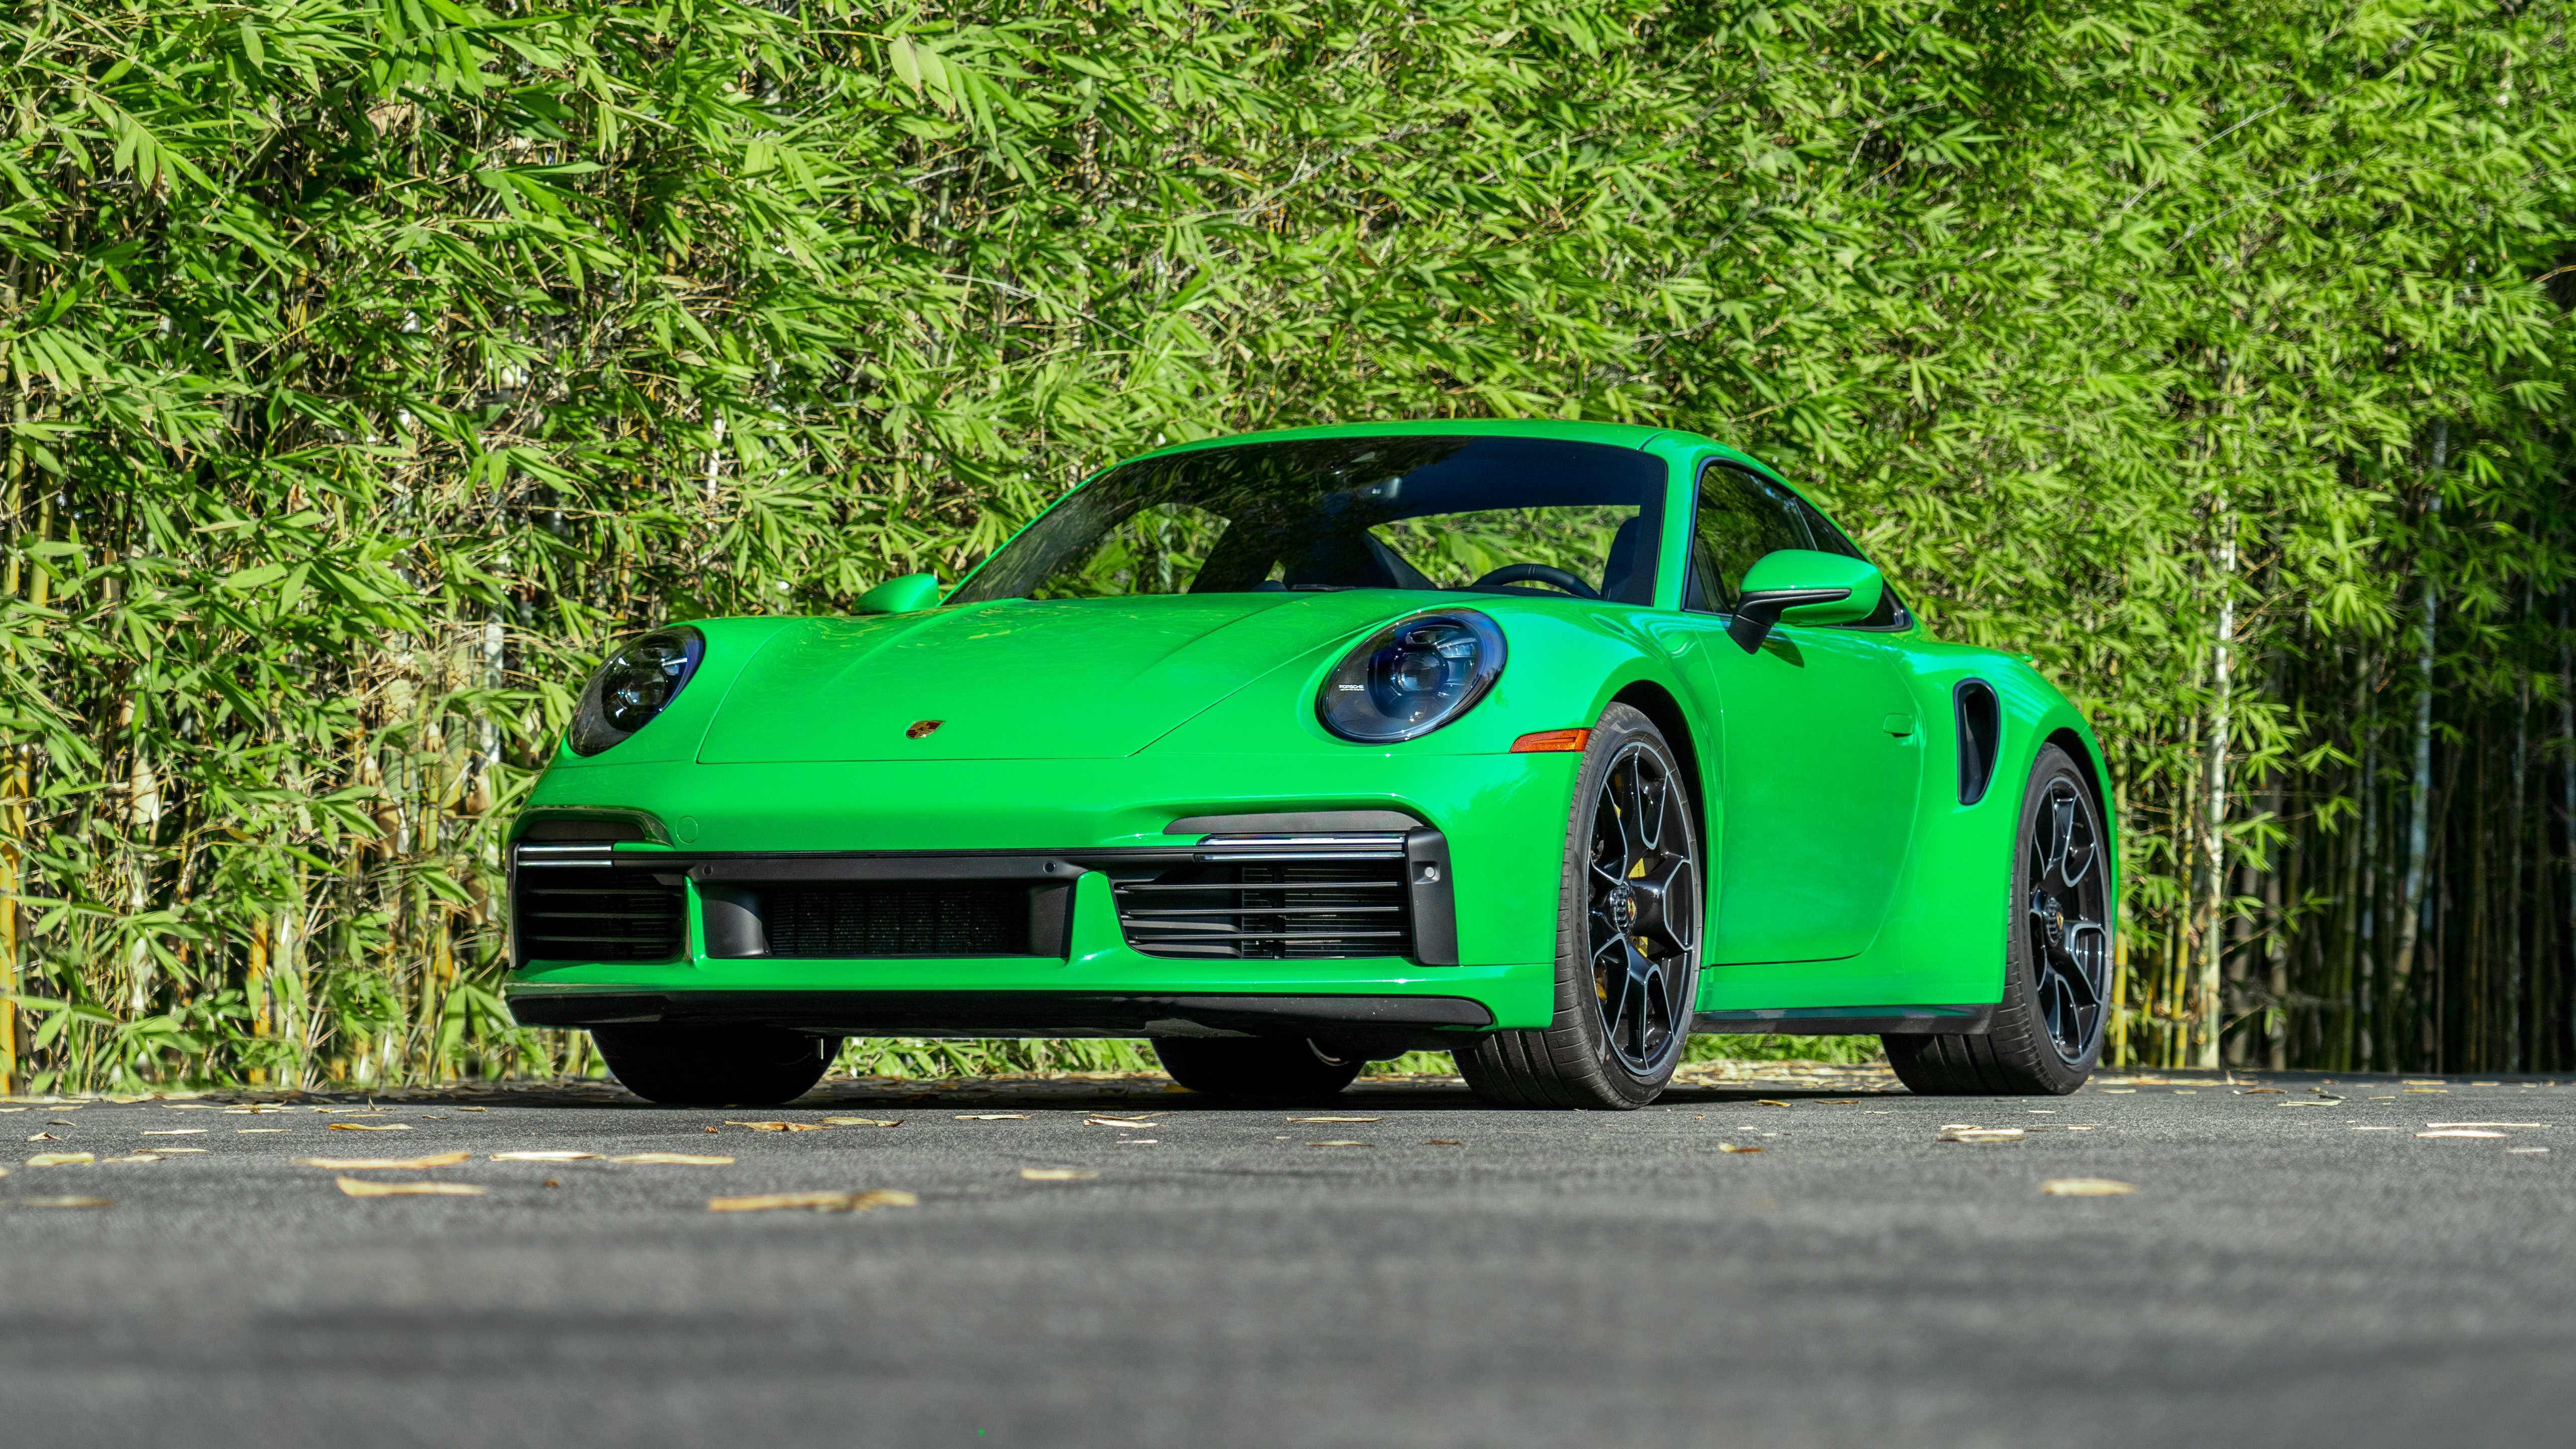 Hãy cập nhật ngay bộ ảnh nền Porsche 911 Turbo S 5K Wallpaper để thể hiện đẳng cấp và sự hoài niệm của bạn với chiếc xe này. Với độ phân giải cao cùng chất lượng hình ảnh đẹp mắt, bộ sưu tập này sẽ làm cho màn hình máy tính của bạn trở nên nổi bật hơn bao giờ hết.